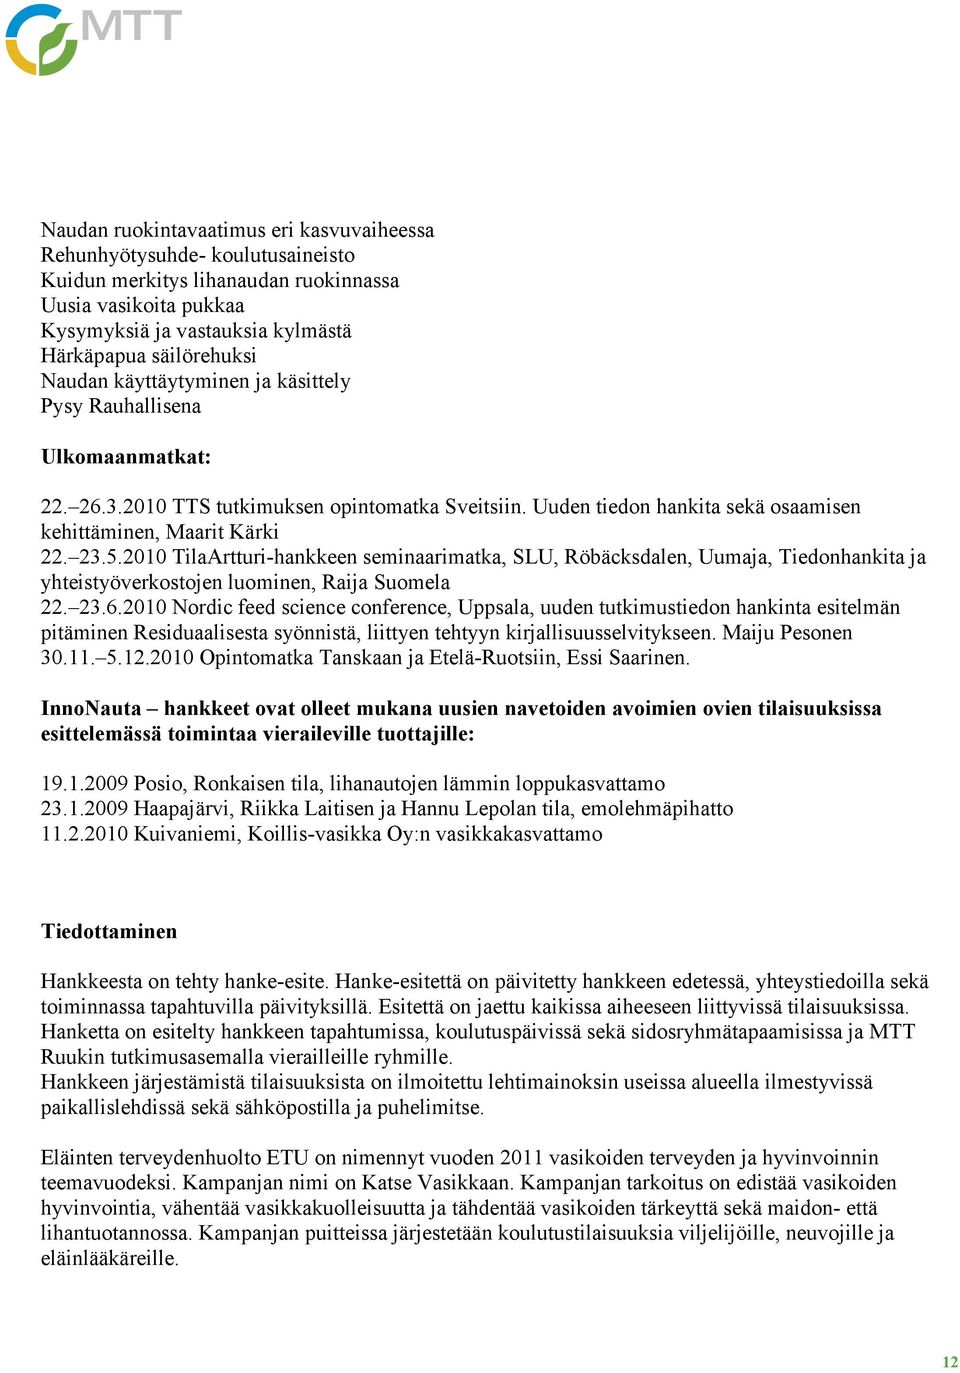 2010 TilaArtturi-hankkeen seminaarimatka, SLU, Röbäcksdalen, Uumaja, Tiedonhankita ja yhteistyöverkostojen luominen, Raija Suomela 22. 23.6.